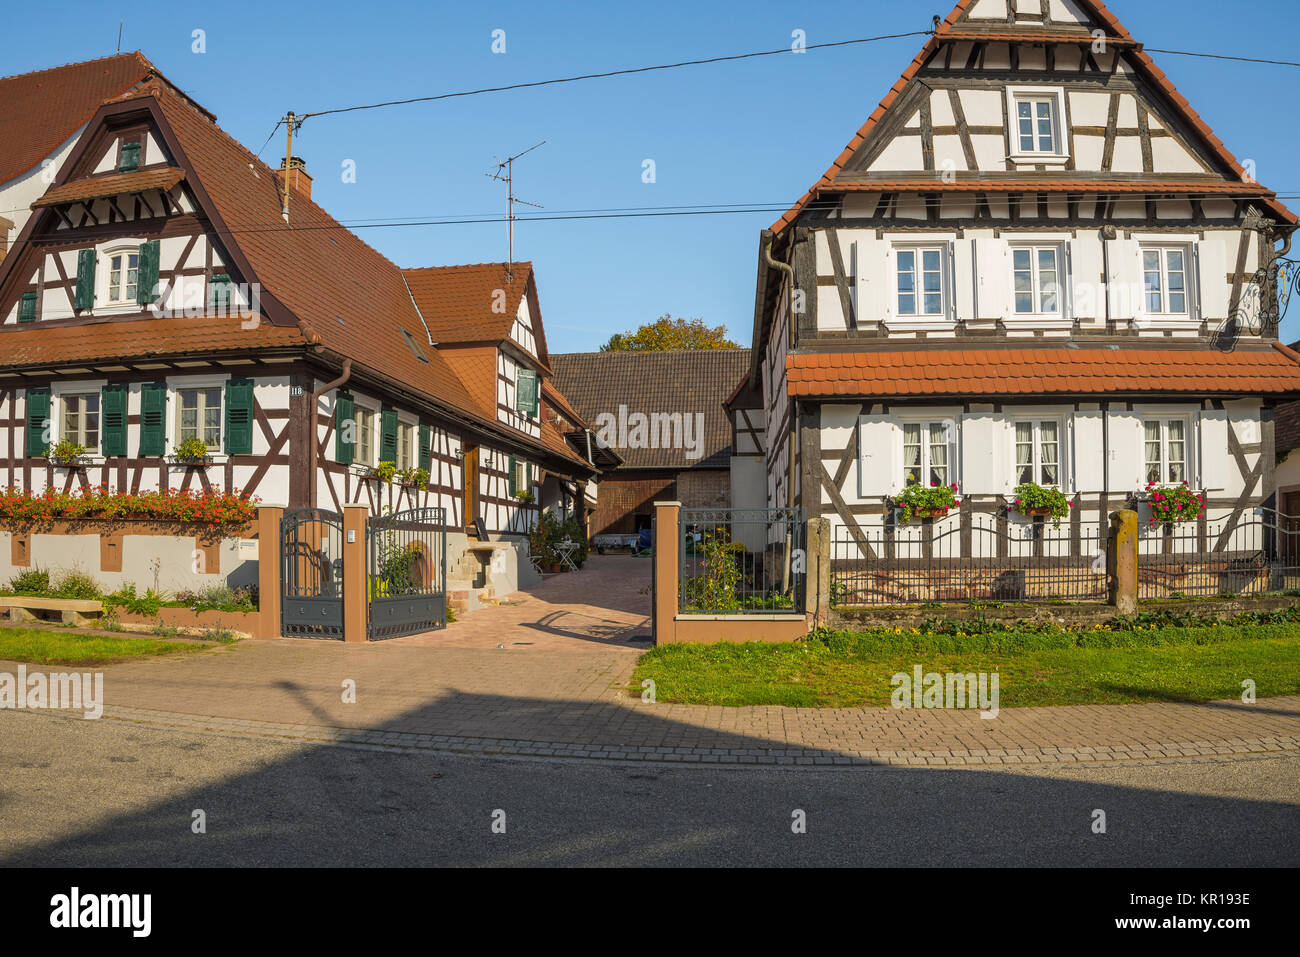 Maisons à colombages avec décoration florale, Seebach, petit village en Alsace, France, membre de l'association les plus beaux villages de France Banque D'Images